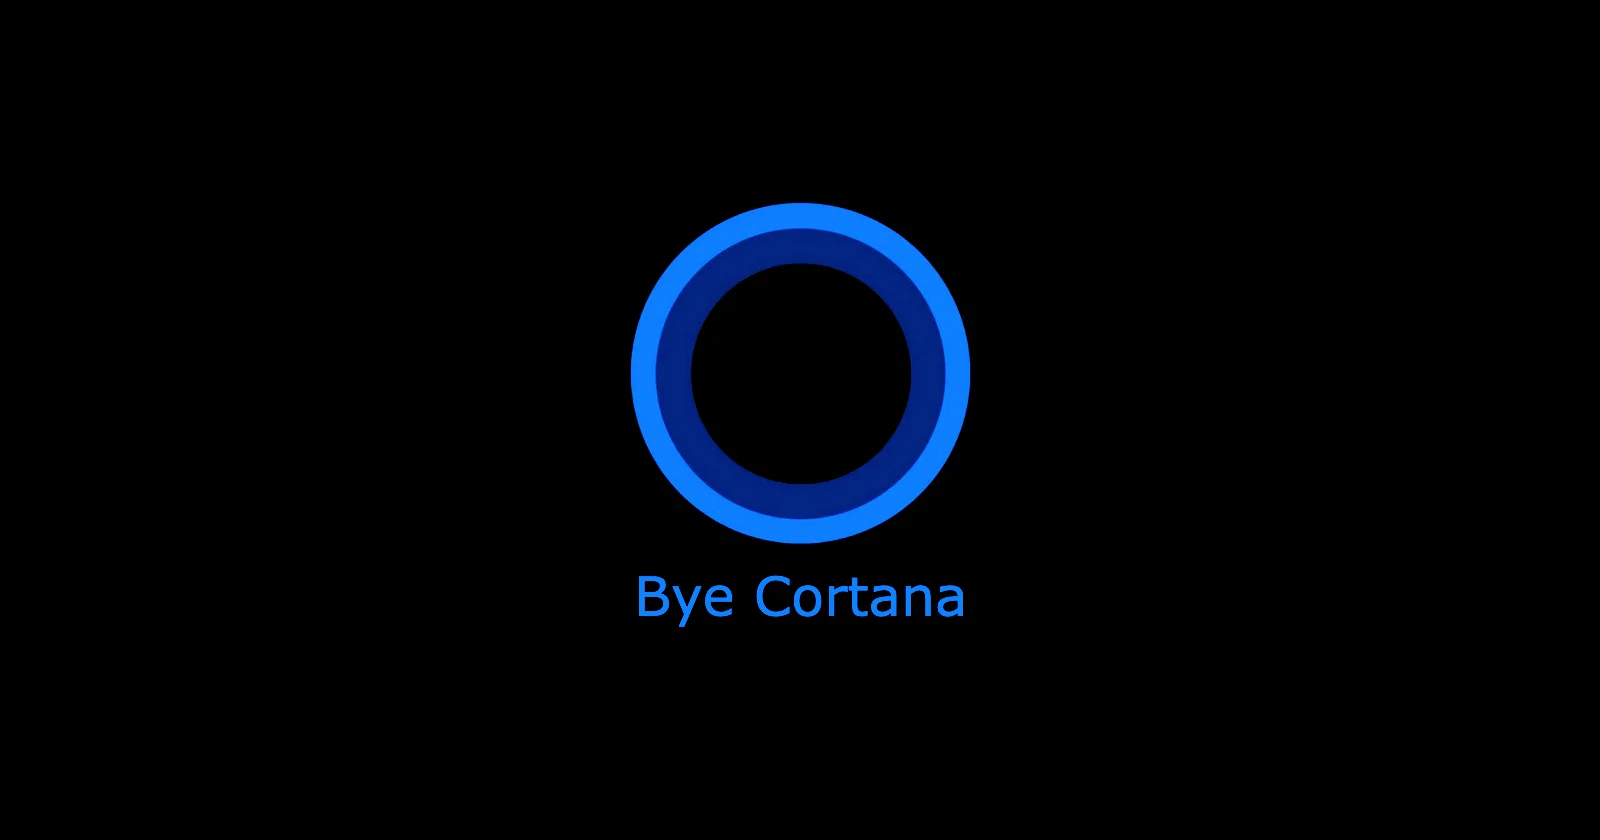 Cortana, ¡adiós! Microsoft dejará de dar soporte a su asistente de voz